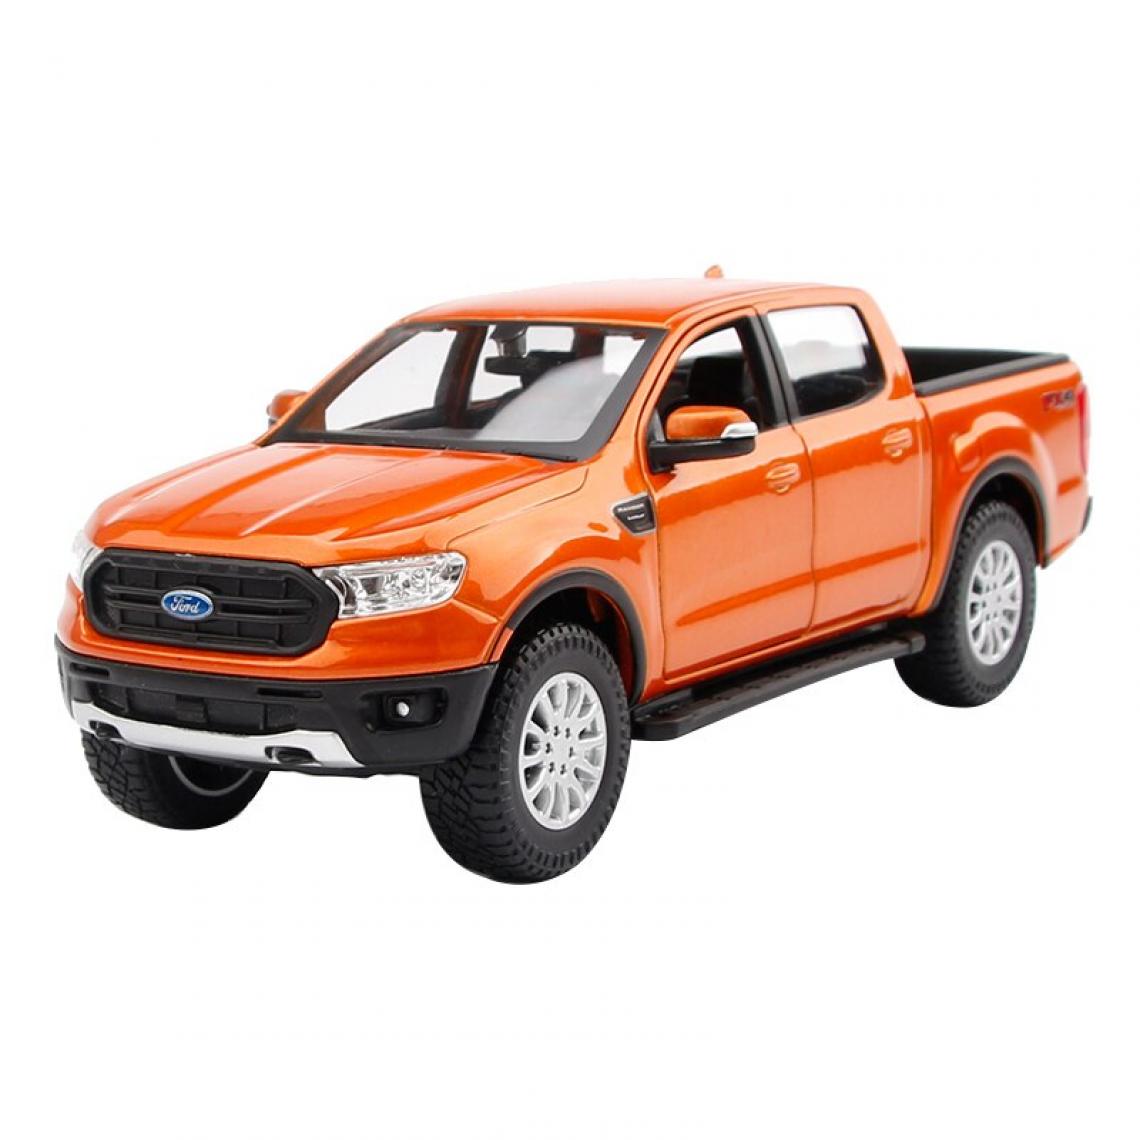 Universal - 1: 27 Ford Ranger hautement détaillé moulé sous pression modèle de précision modèle de voiture collection cadeau | moulé sous pression voiture jouet (orange) - Voitures